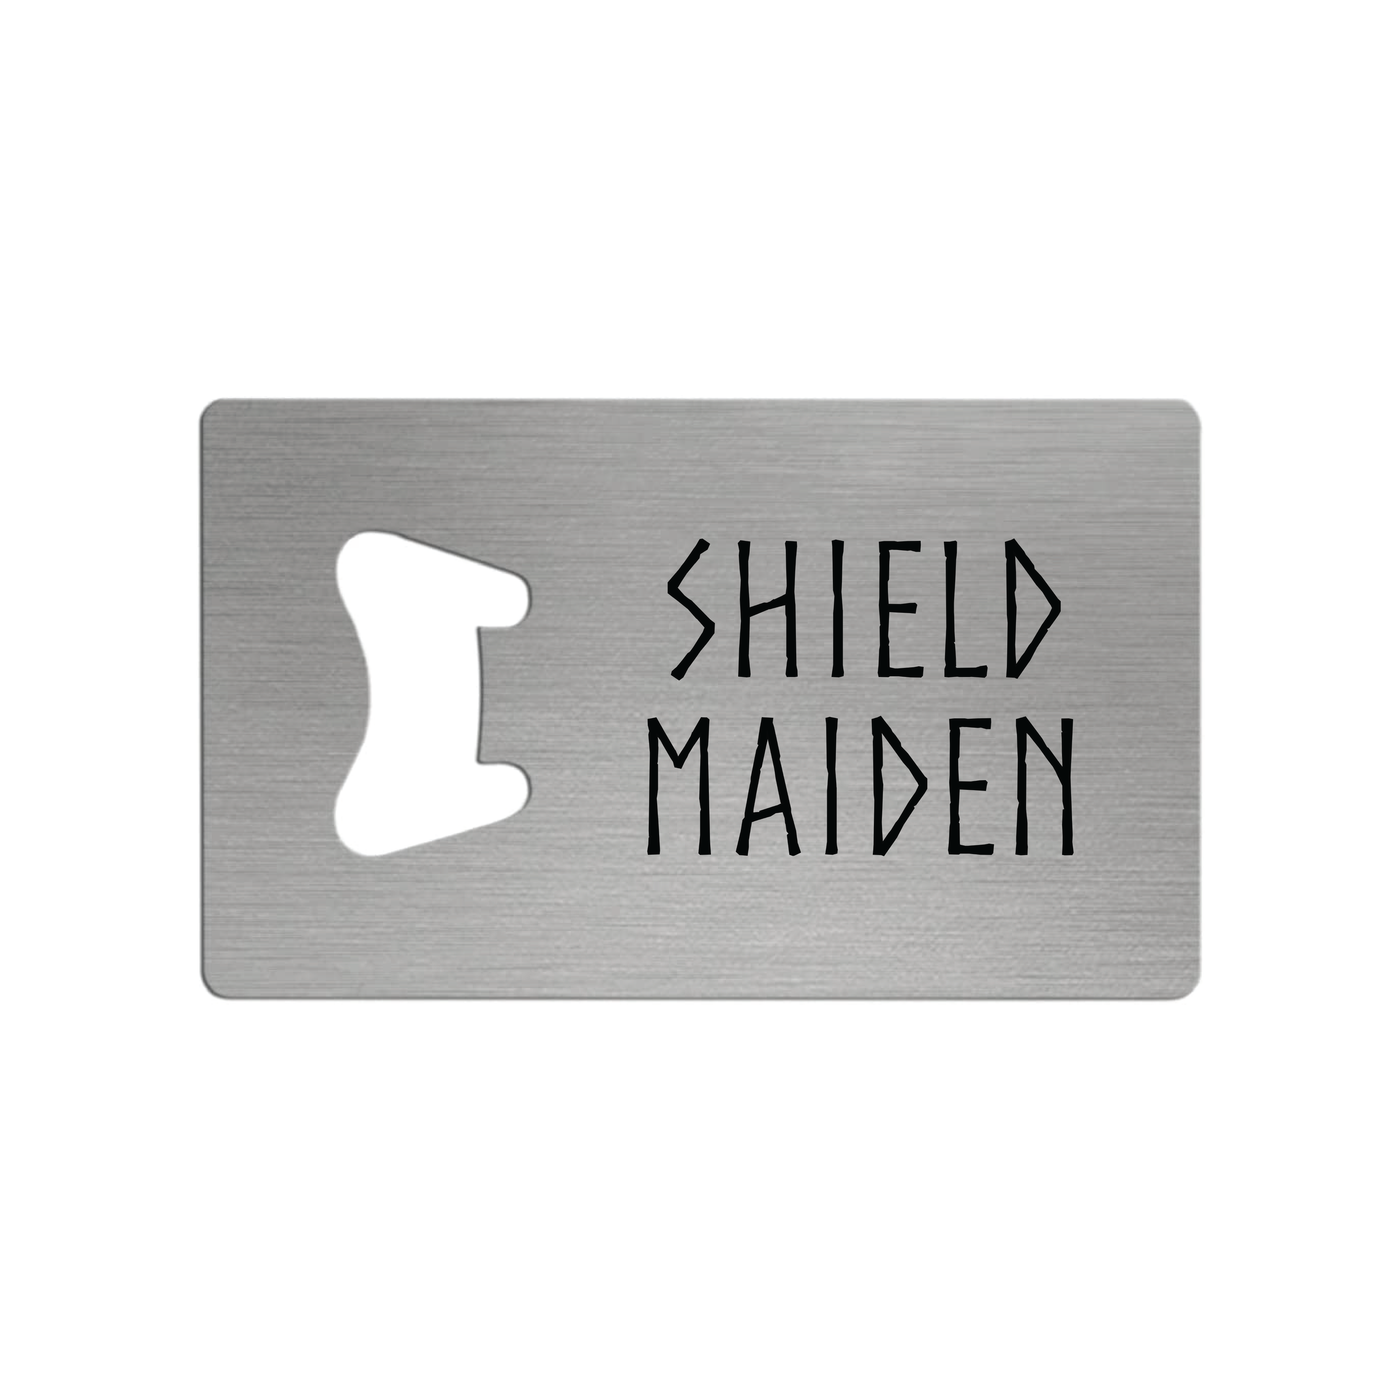 Shield Maiden Bottle Opener